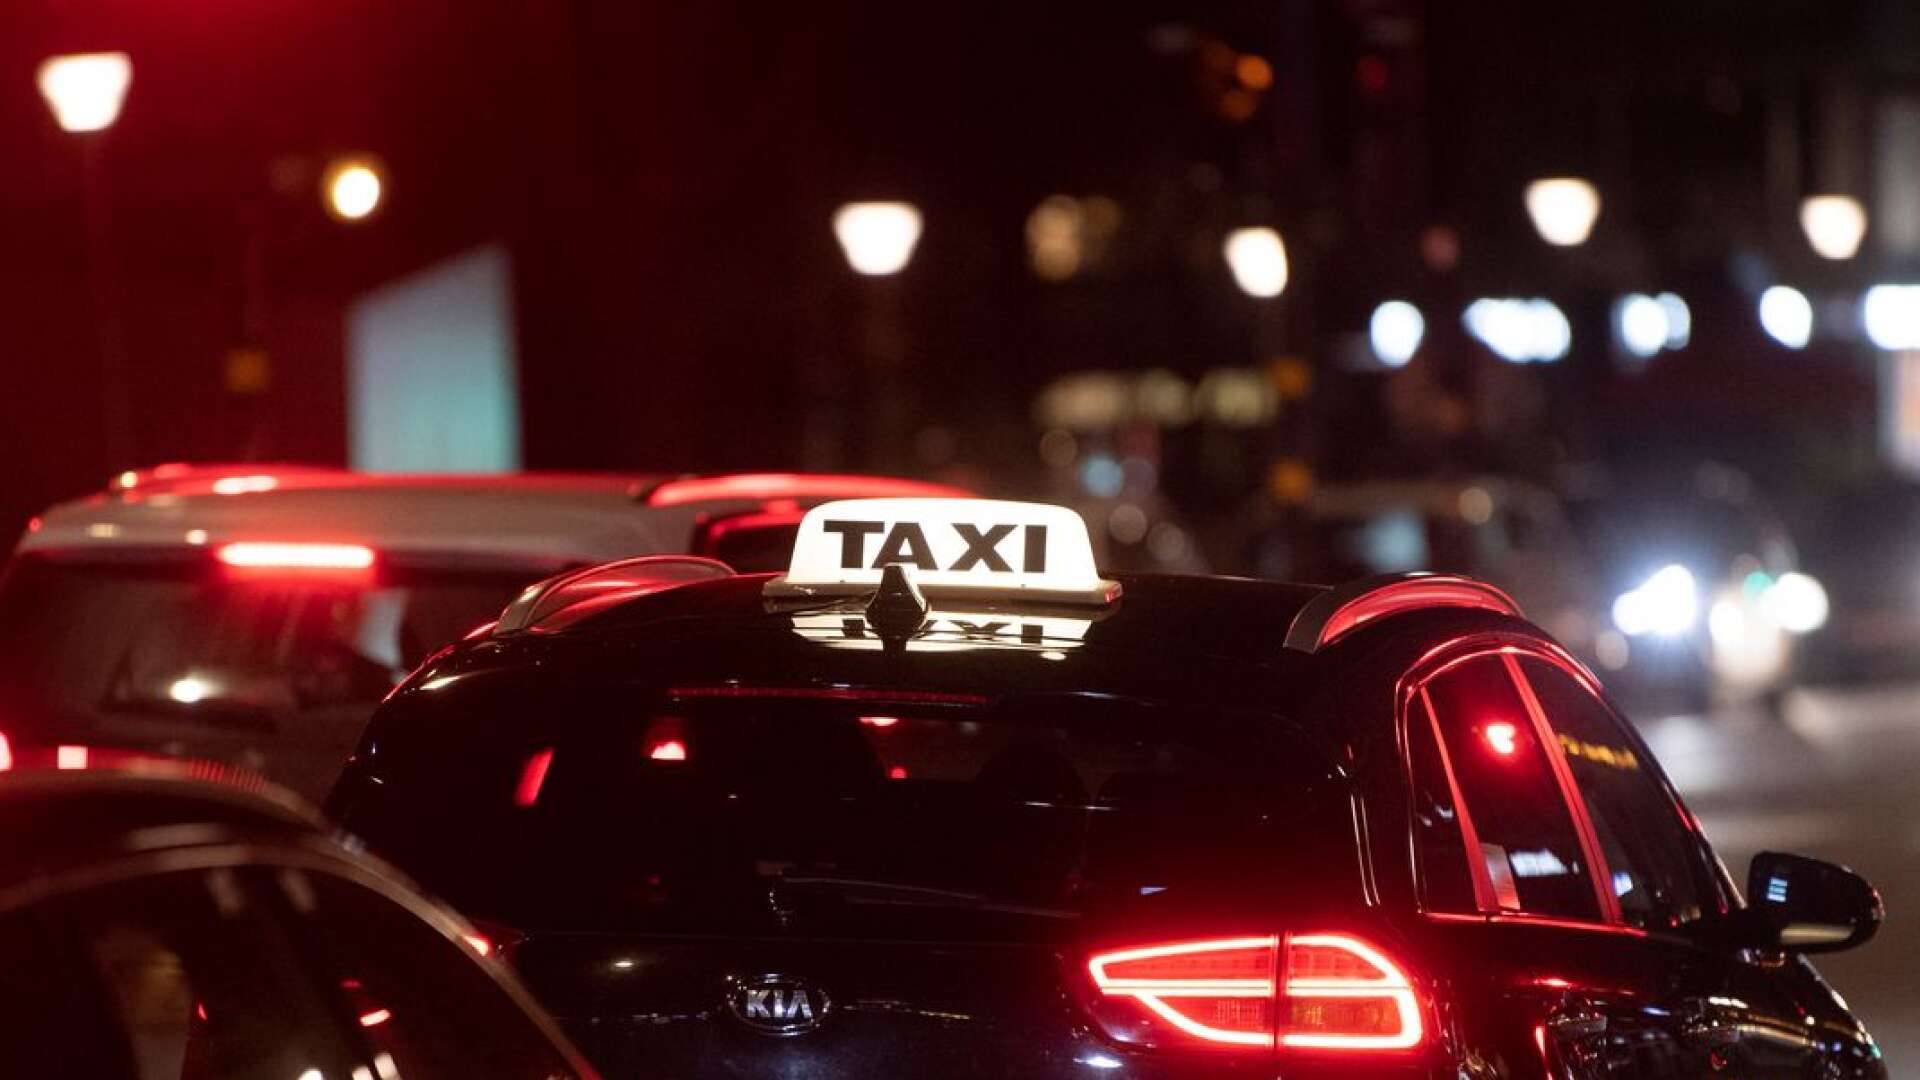 Svensk taxinäring vill göra jobbet, men låt inte viljan att betala skatt och lagstadgade avgifter bli vår undergång, skriver Lennart Kalderén, ordförande Svenska Taxiförbundet.